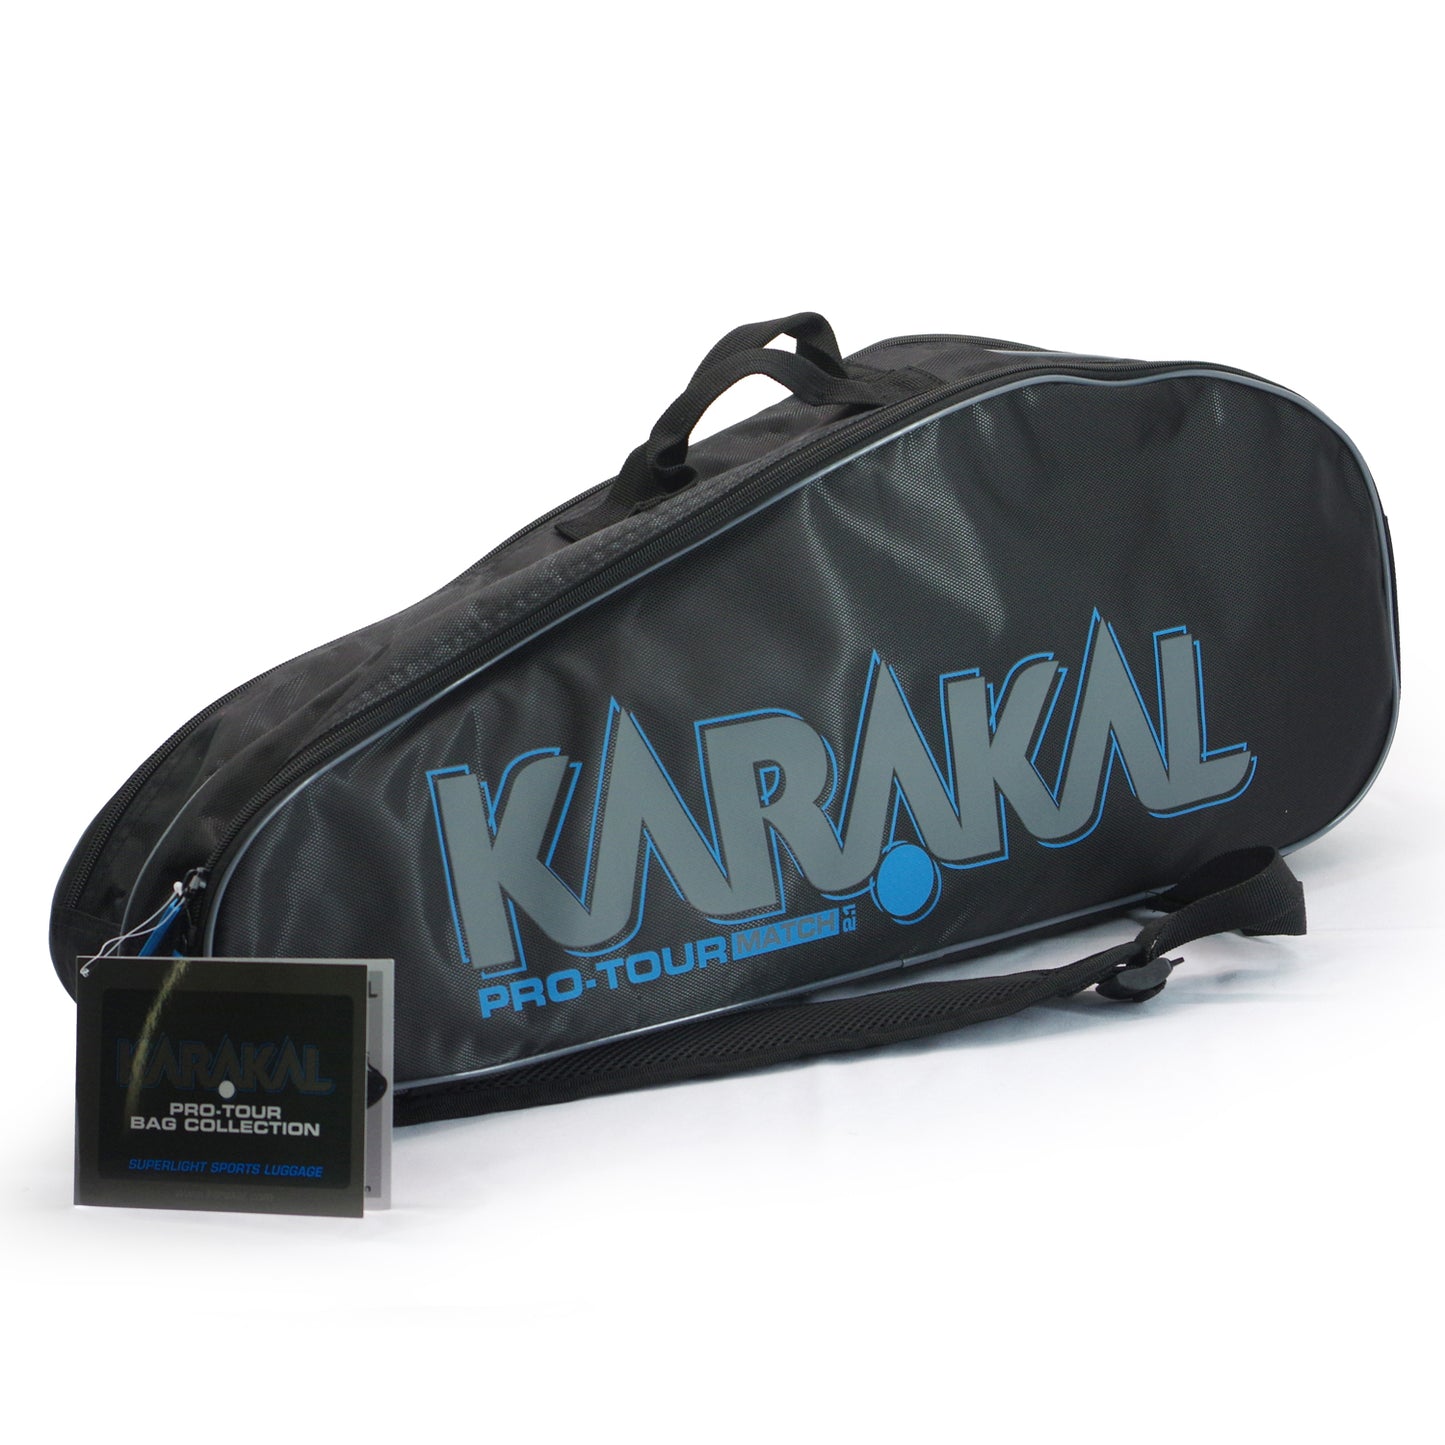 Karakal Pro Tour 2.1 Match, 4 Racket Bag with Blue Trim